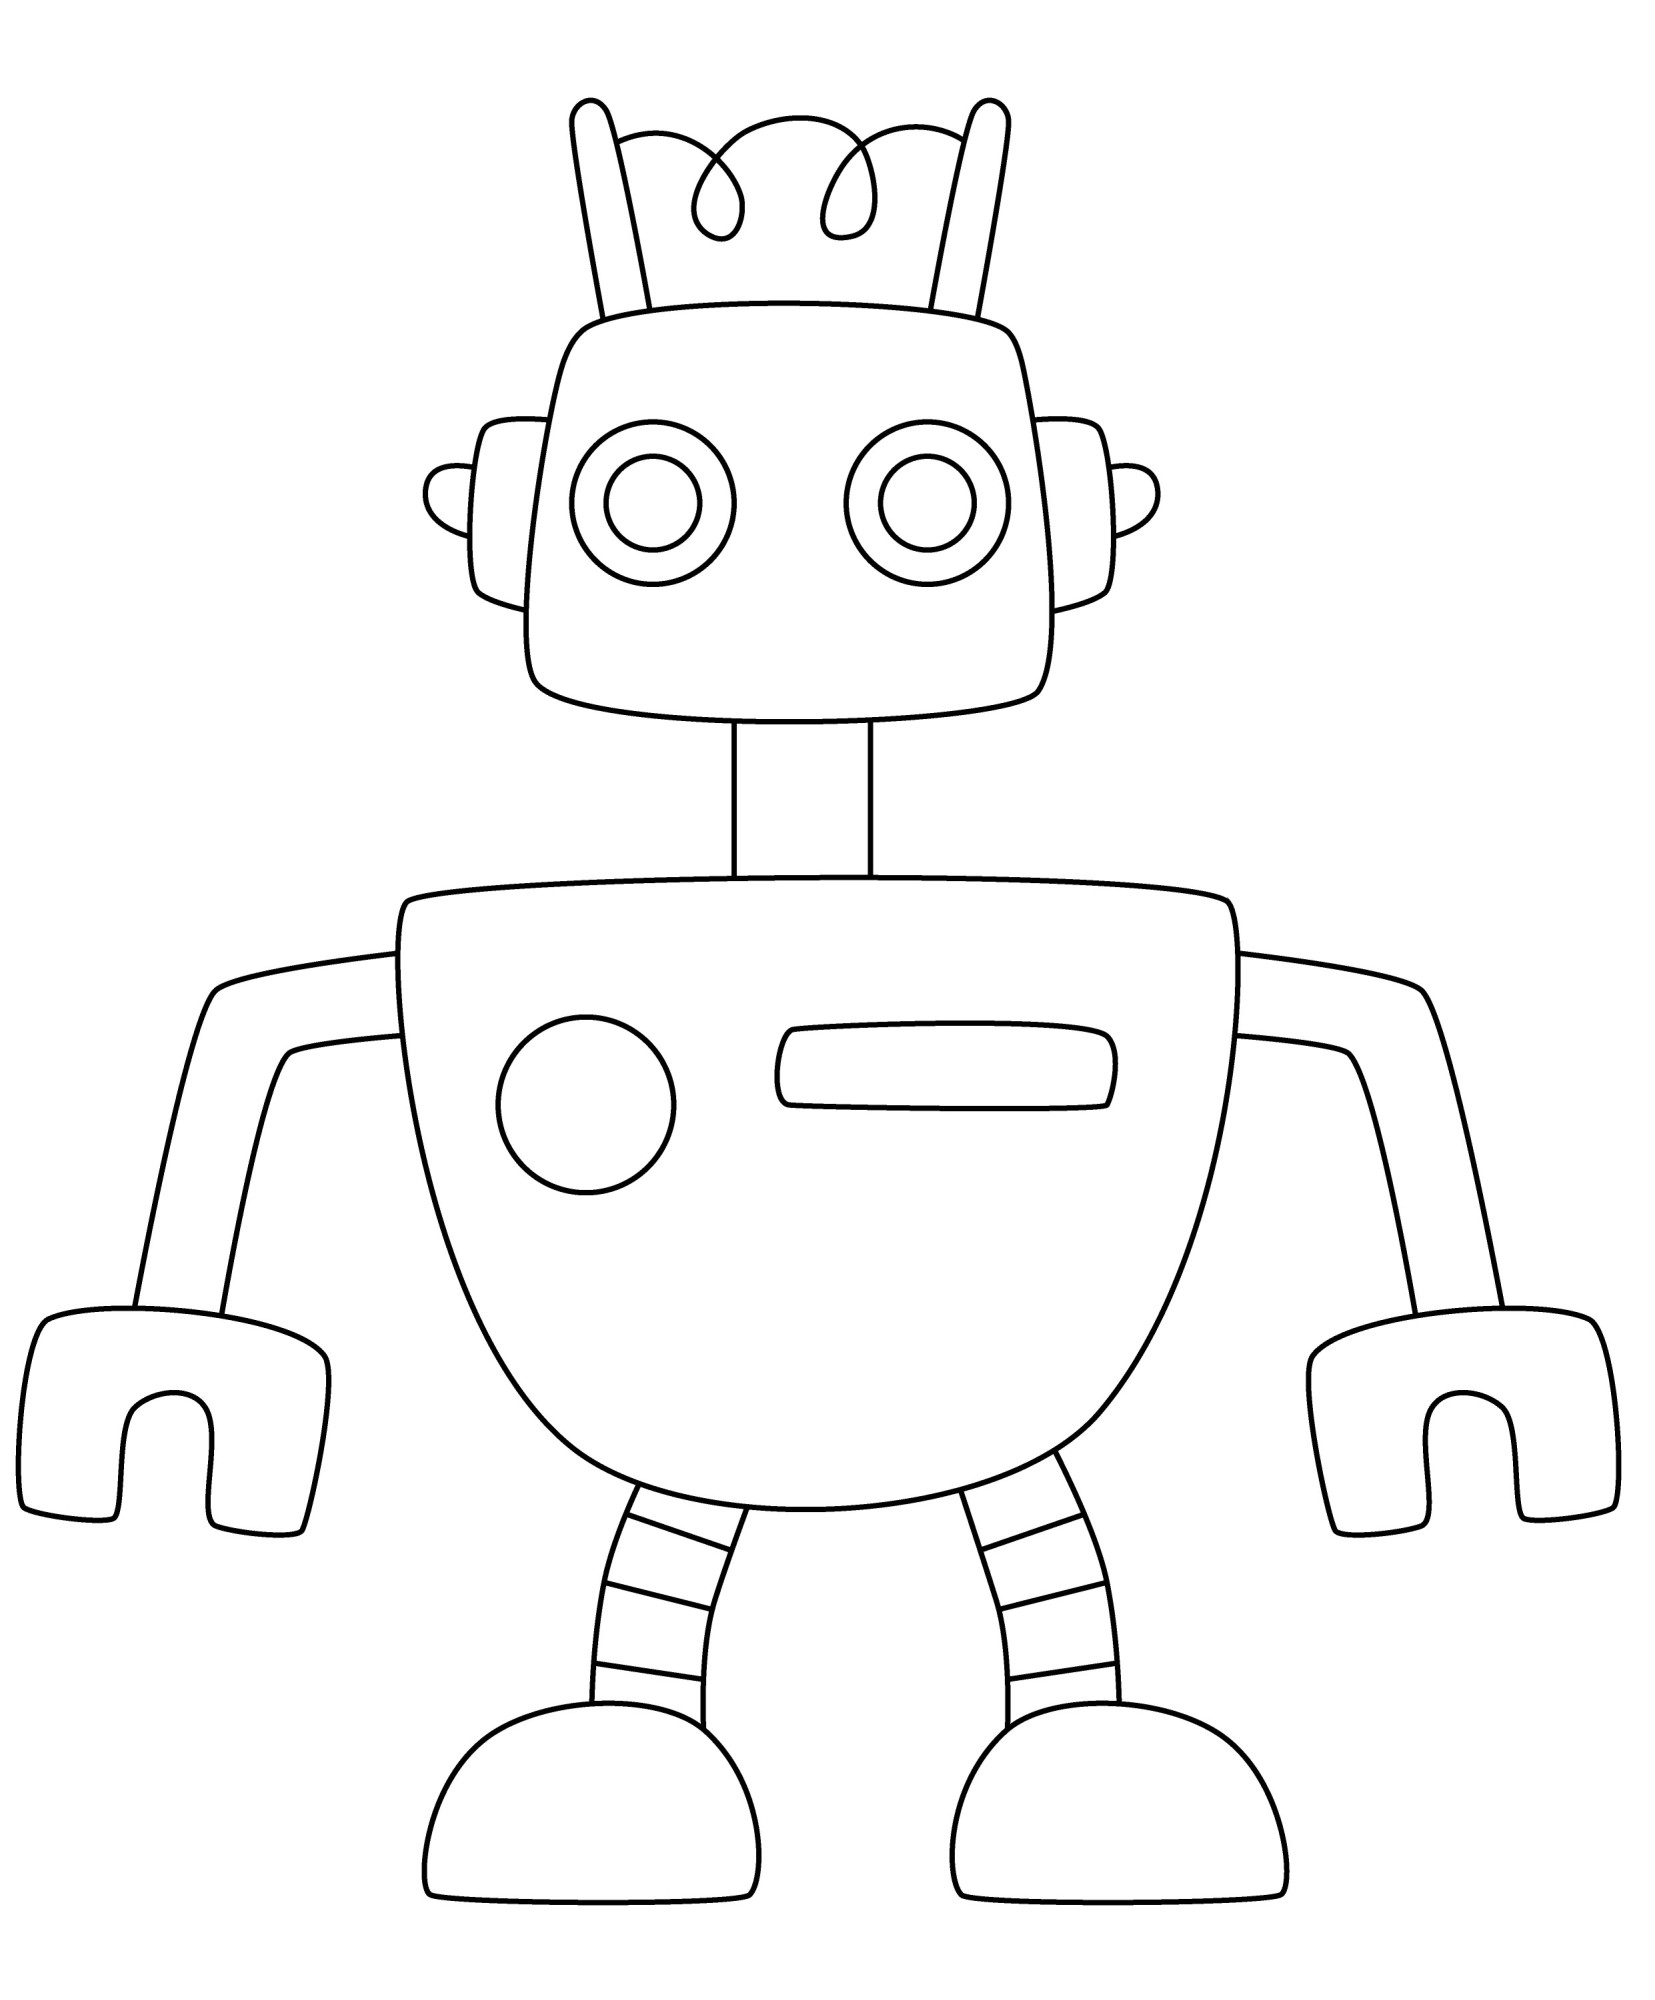 Раскраска для детей: мини ретро робот «Быстрые ноги»